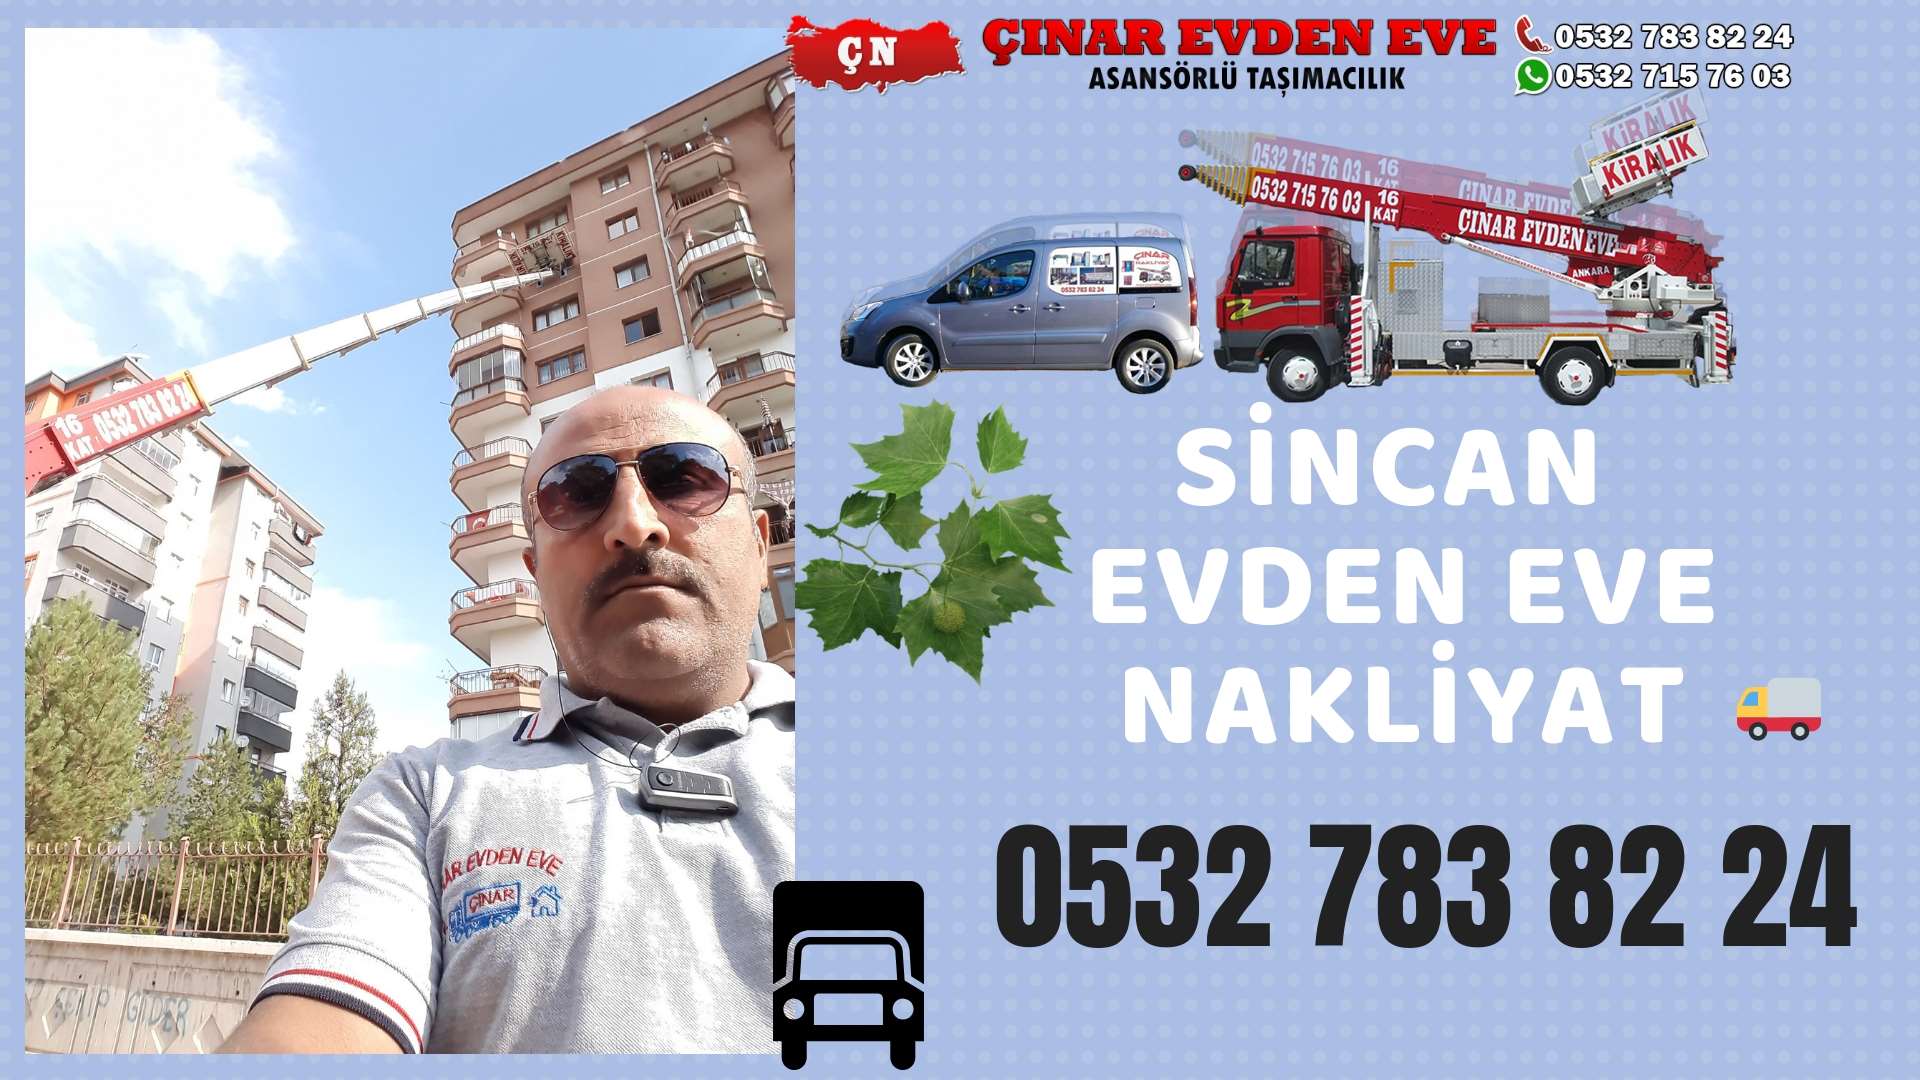 Ankara Polatlı Evden Eve Nakliyat, Asansörlü Taşımacılık, Ofis / İş Yeri Taşıma 0532 715 76 03